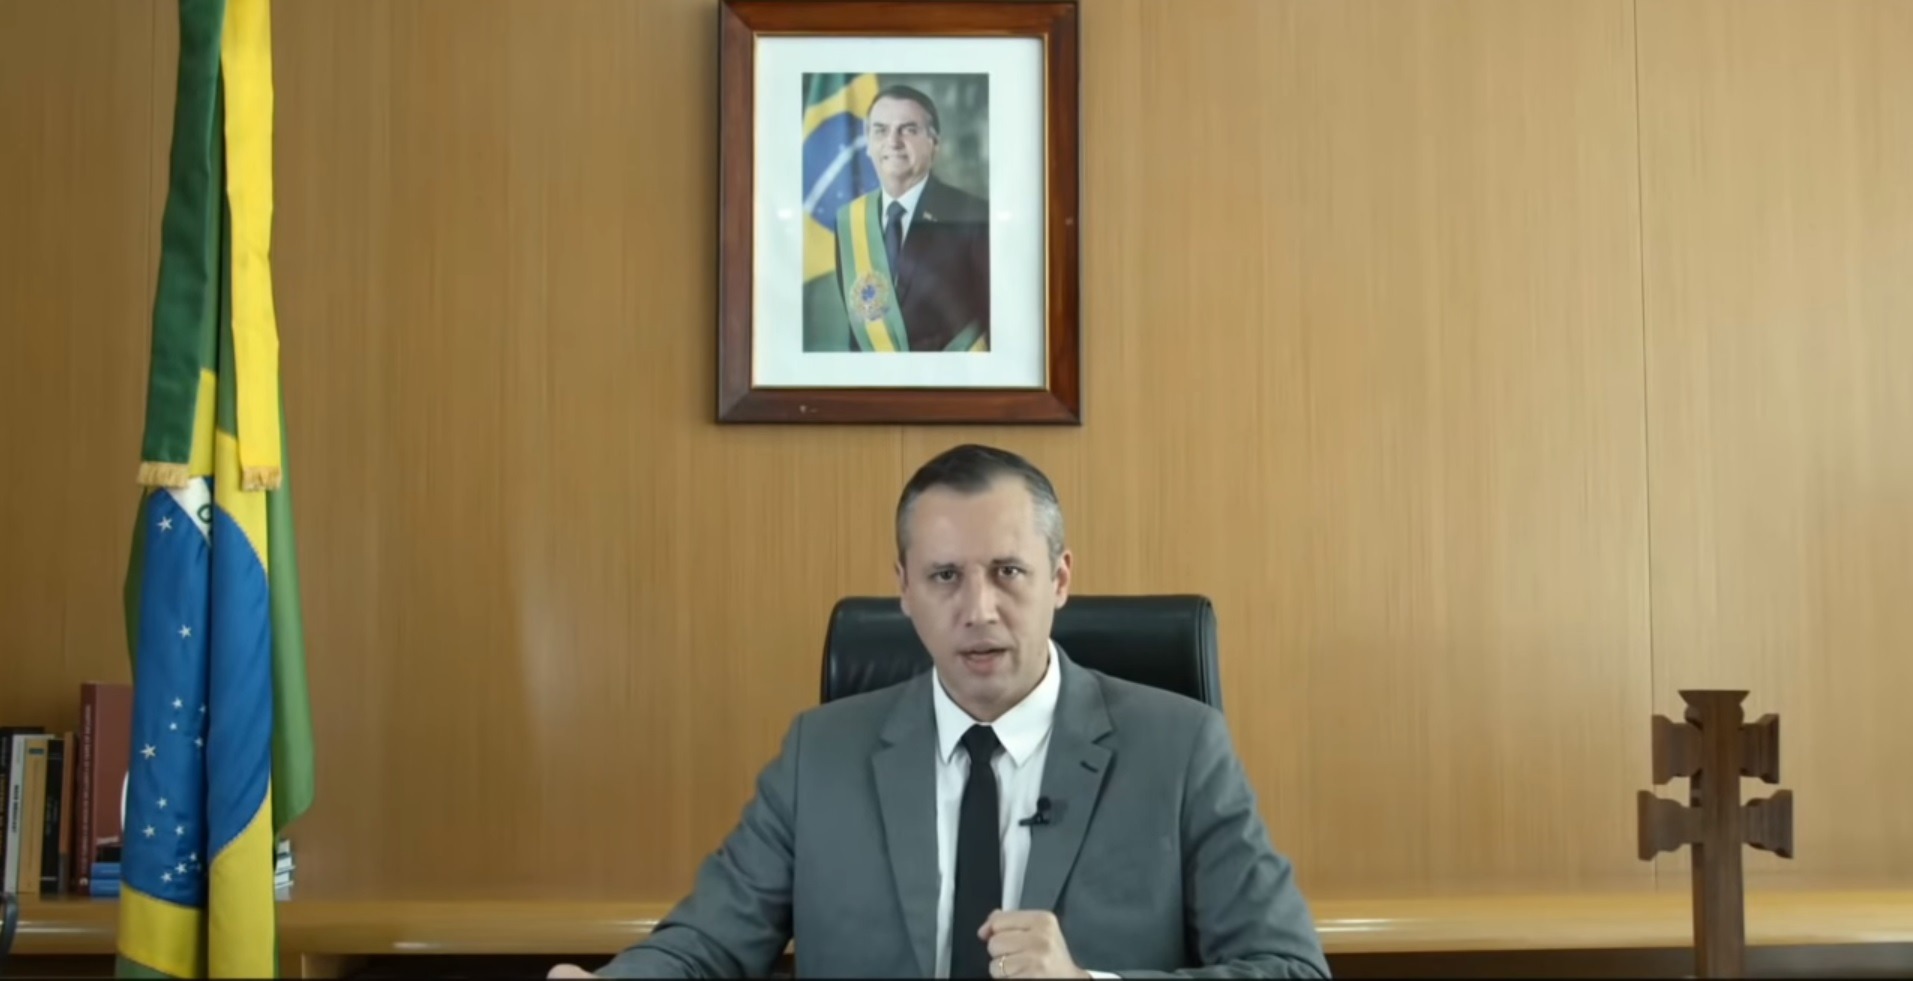 Permanência de Alvim foi insustentável após discurso infeliz, diz Bolsonaro